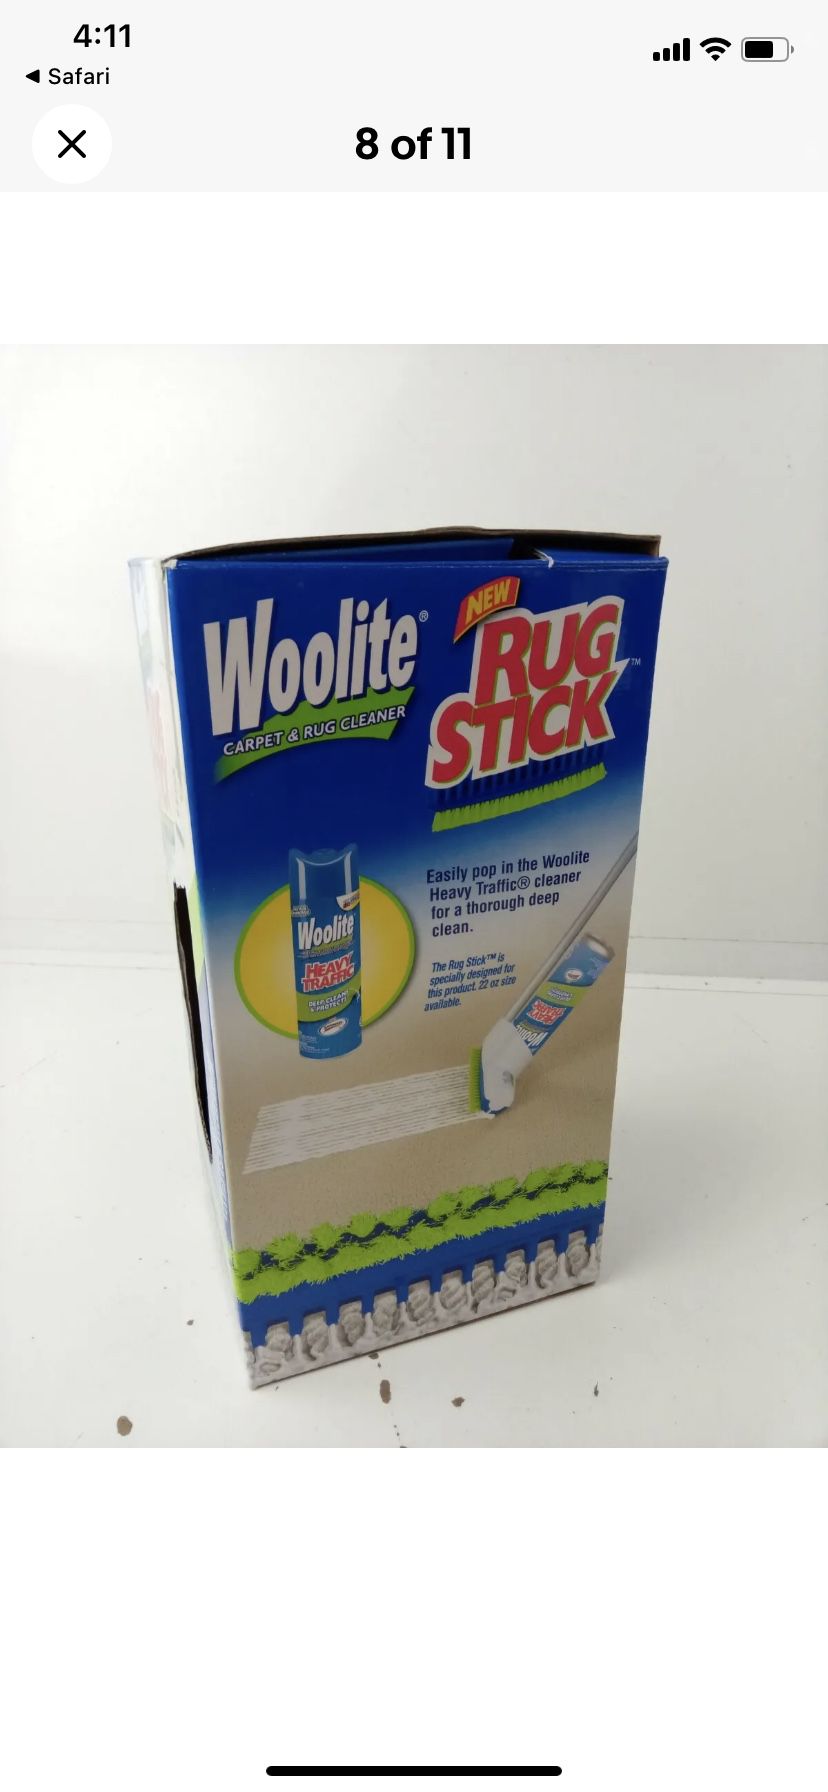 Woolite 22 oz Heavy Traffic Foam Carpet Cleaner by Woolite at Fleet Farm